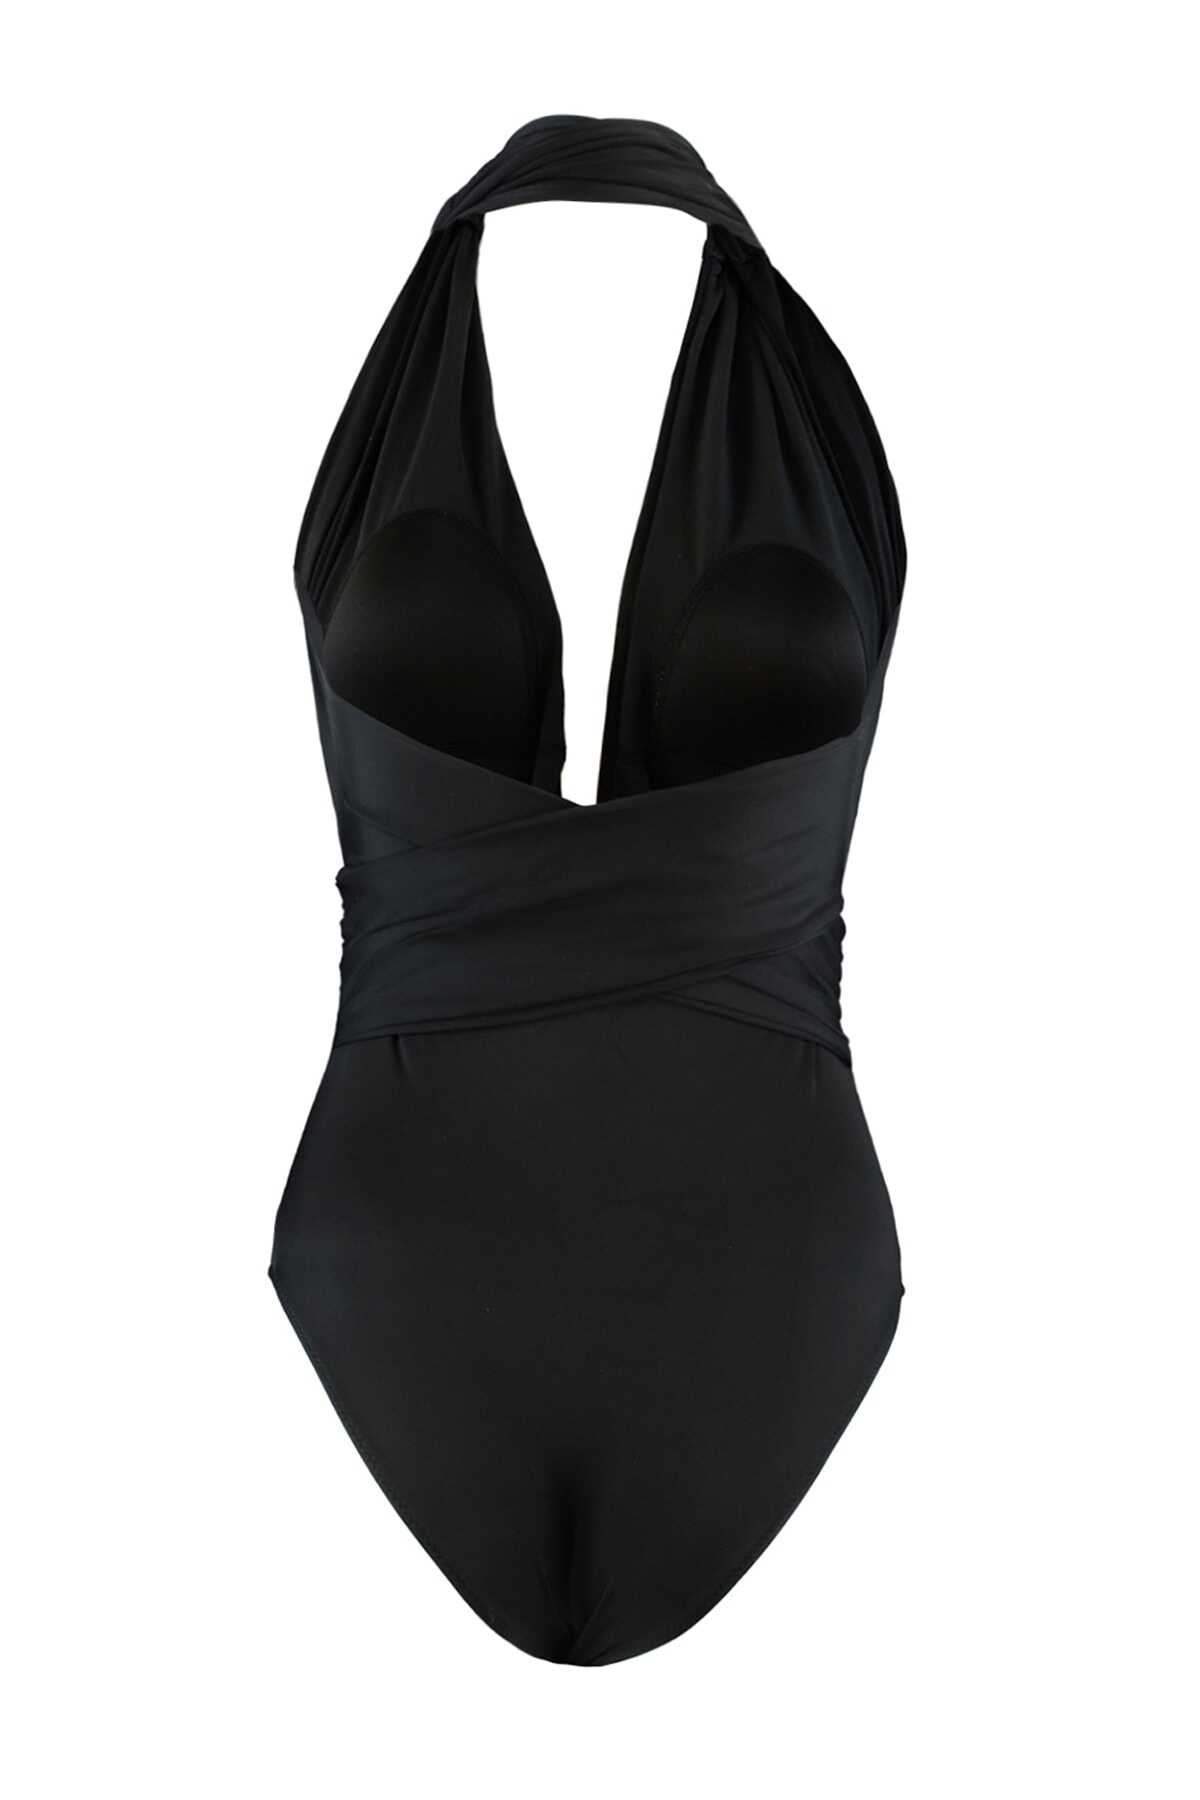 لباس ساحلی بادی یقه هفت باز پشت ضربدری زنانه مشکی برند TRENDYOLMİLLA 